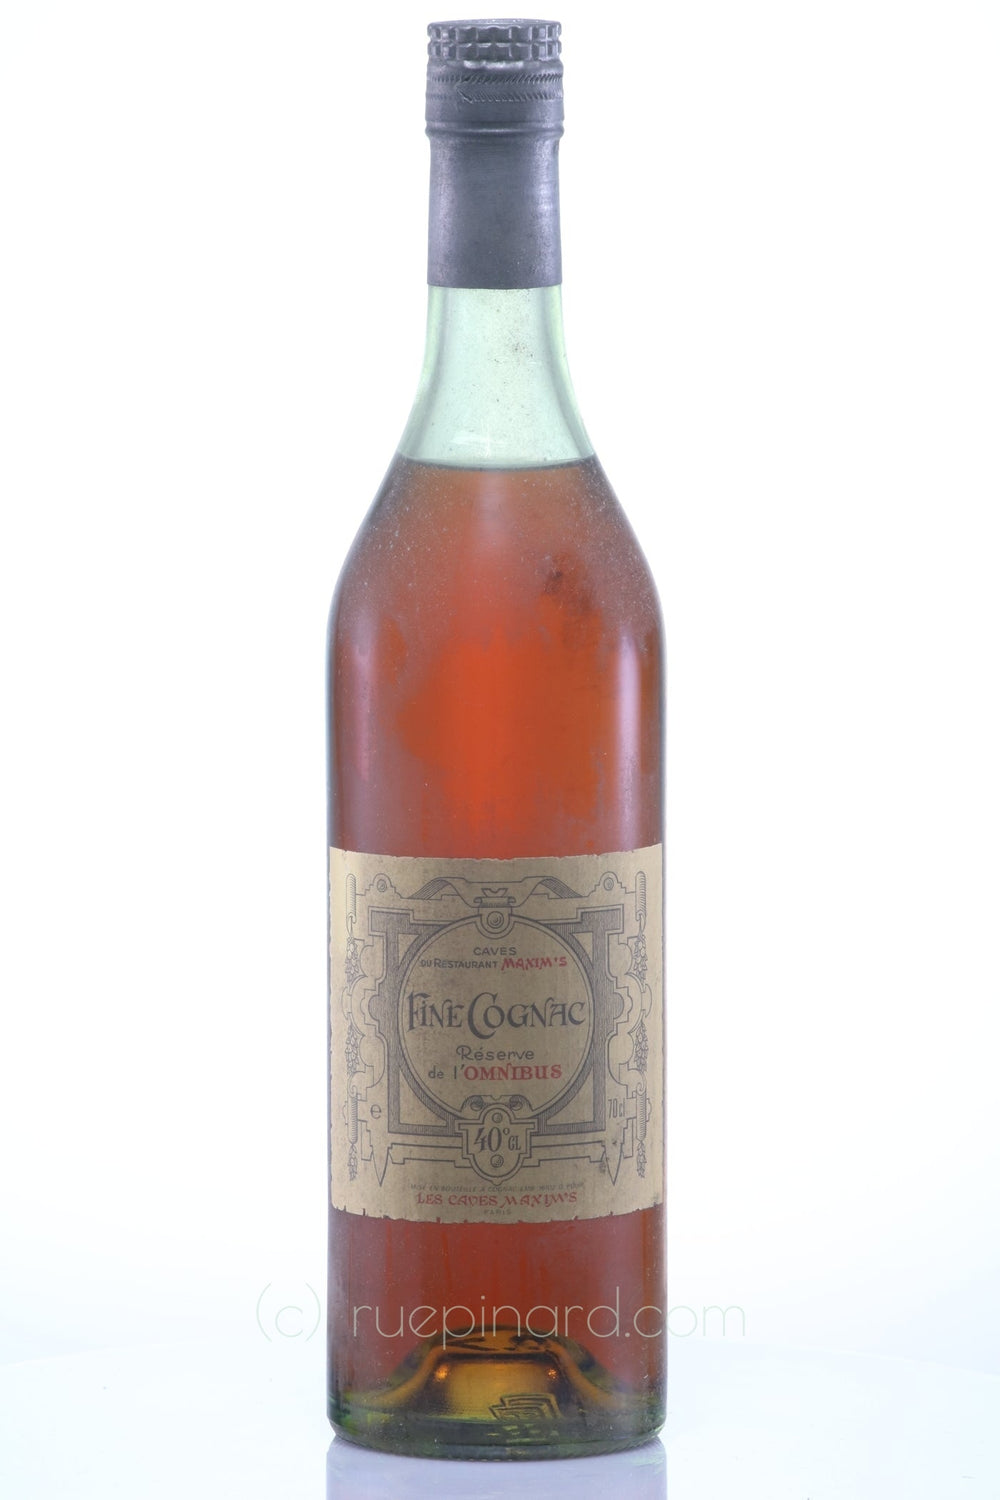 1920s Maxim's Cognac, Caves du Restaurant, Réserve de l'Omnibus - Rue Pinard